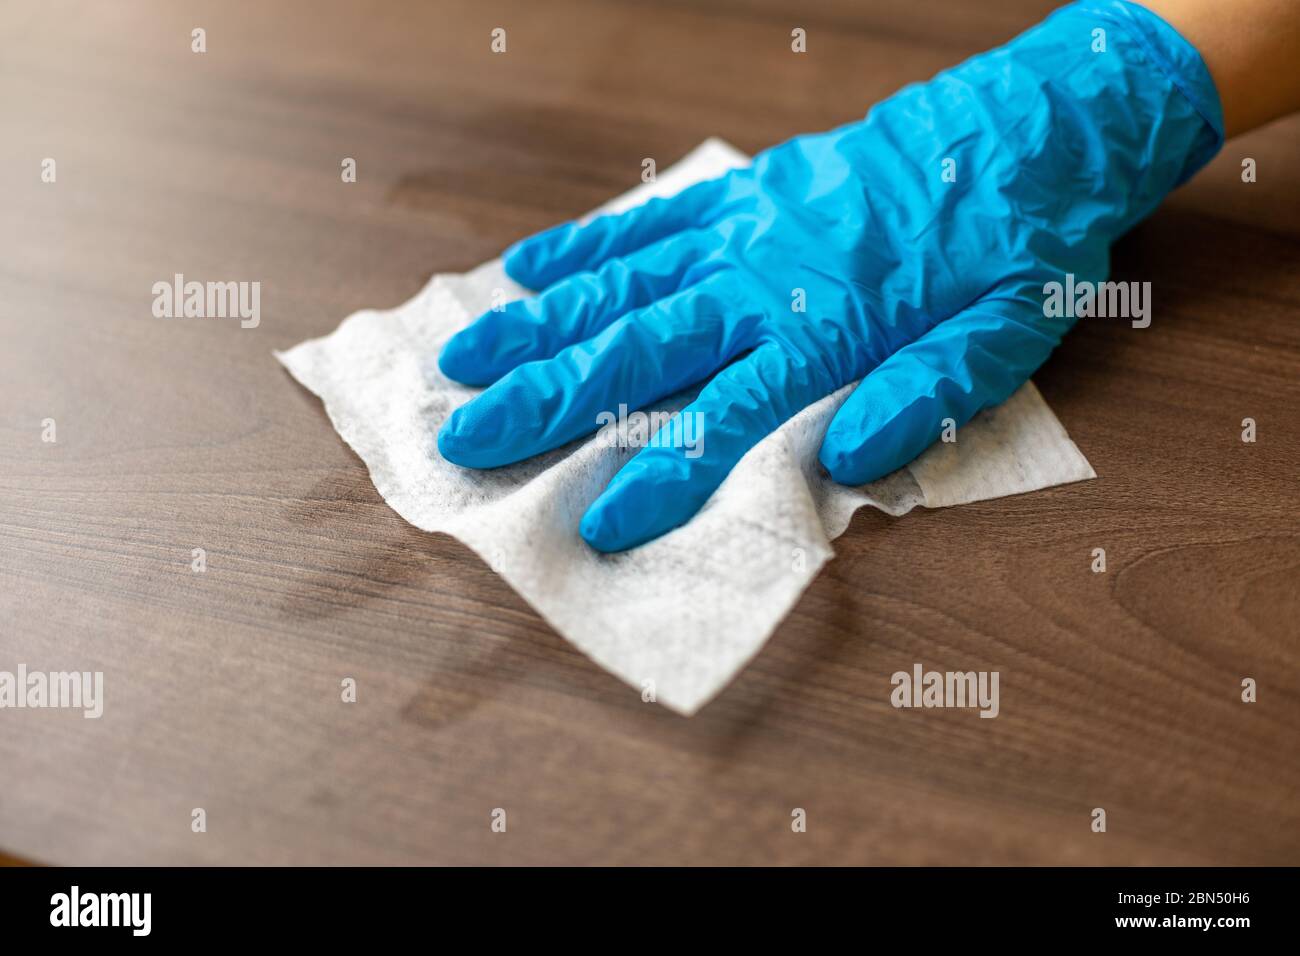 wet wipe gloves